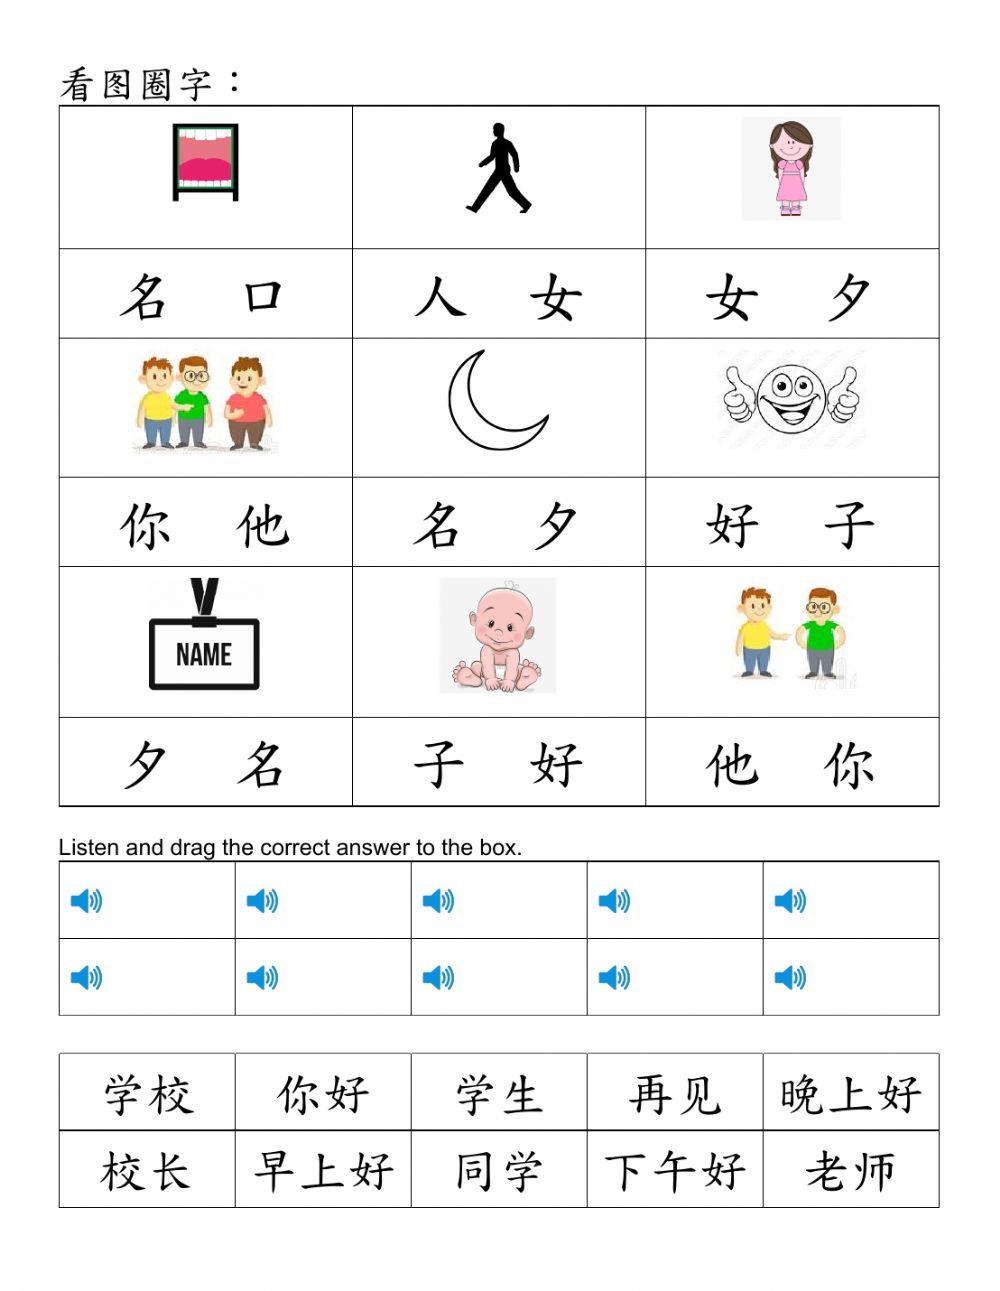 华语幼儿班 Q1 Test